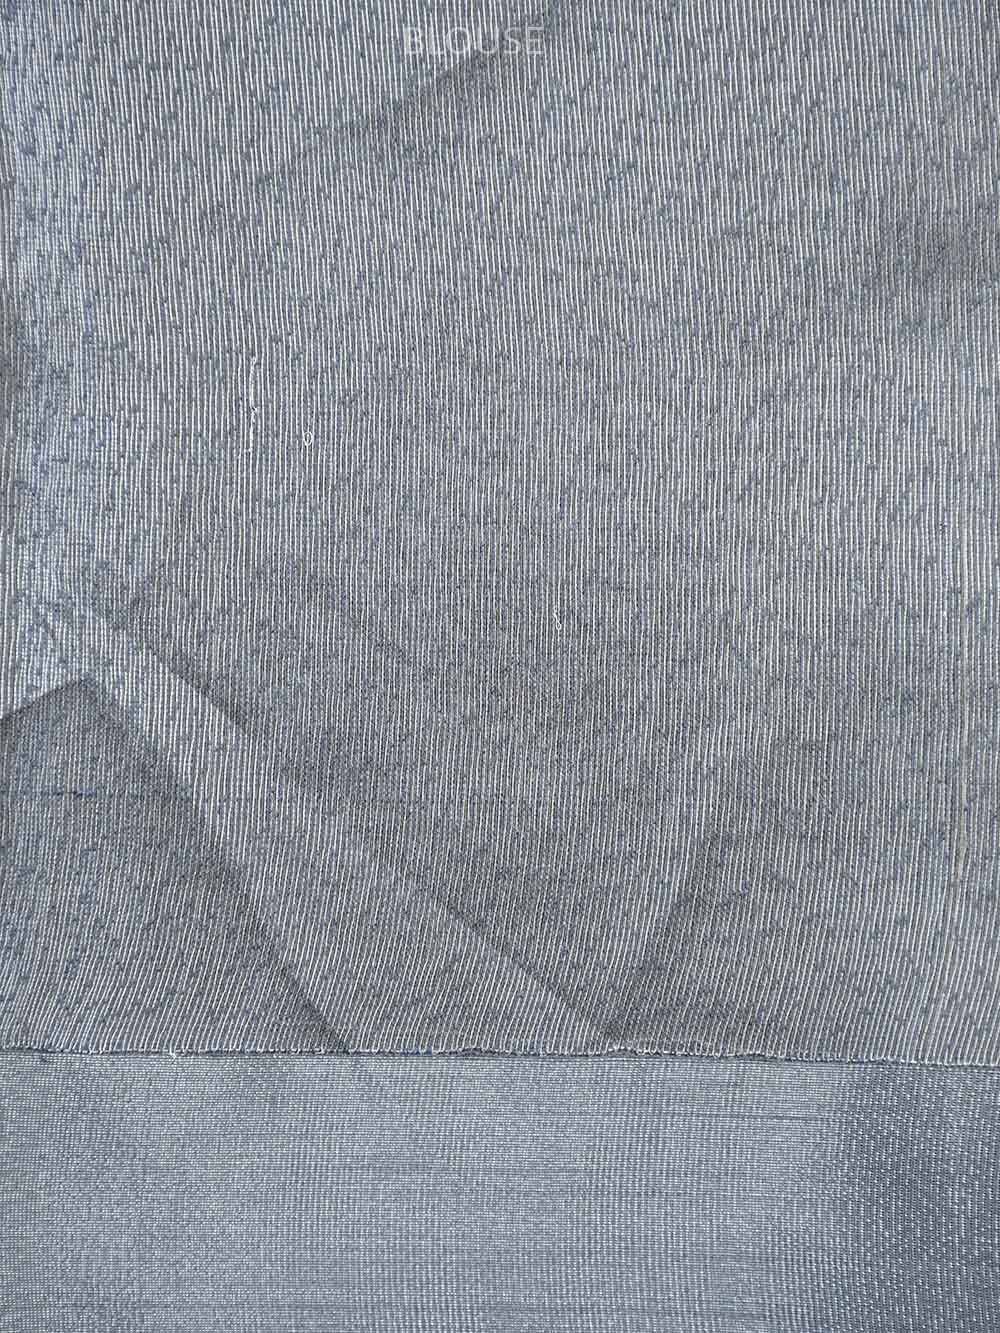 Dusty Grey Jaal Linen Handloom Banarasi Saree - Sacred Weaves